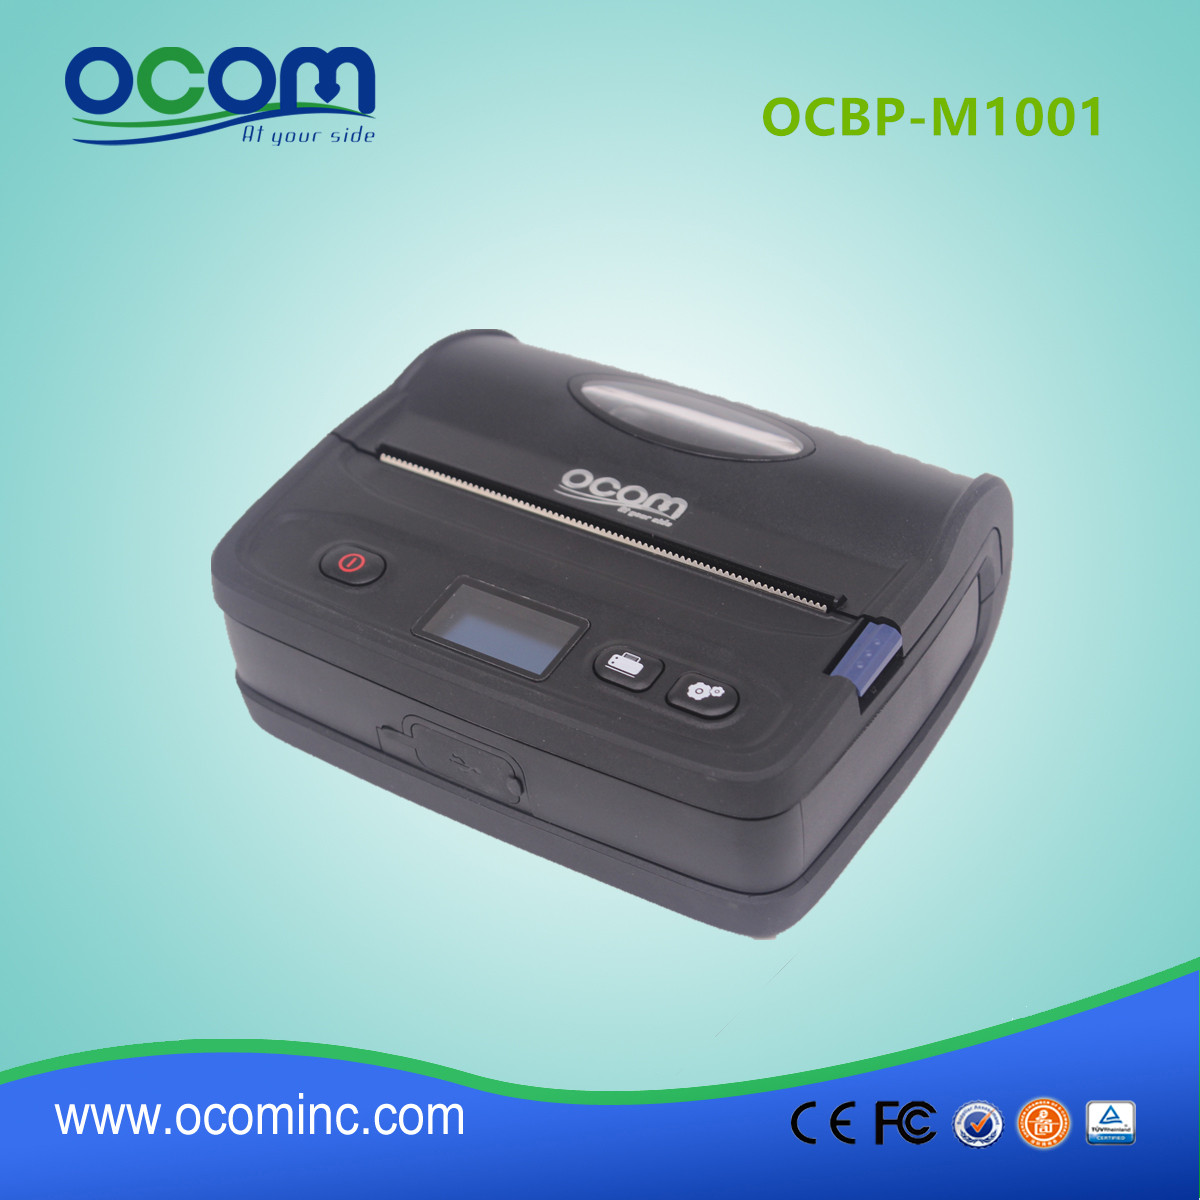 OCBP-M1001 Θερμική συγκολλητική ετικέτα Barcode εκτυπωτή για αυτοκόλλητα